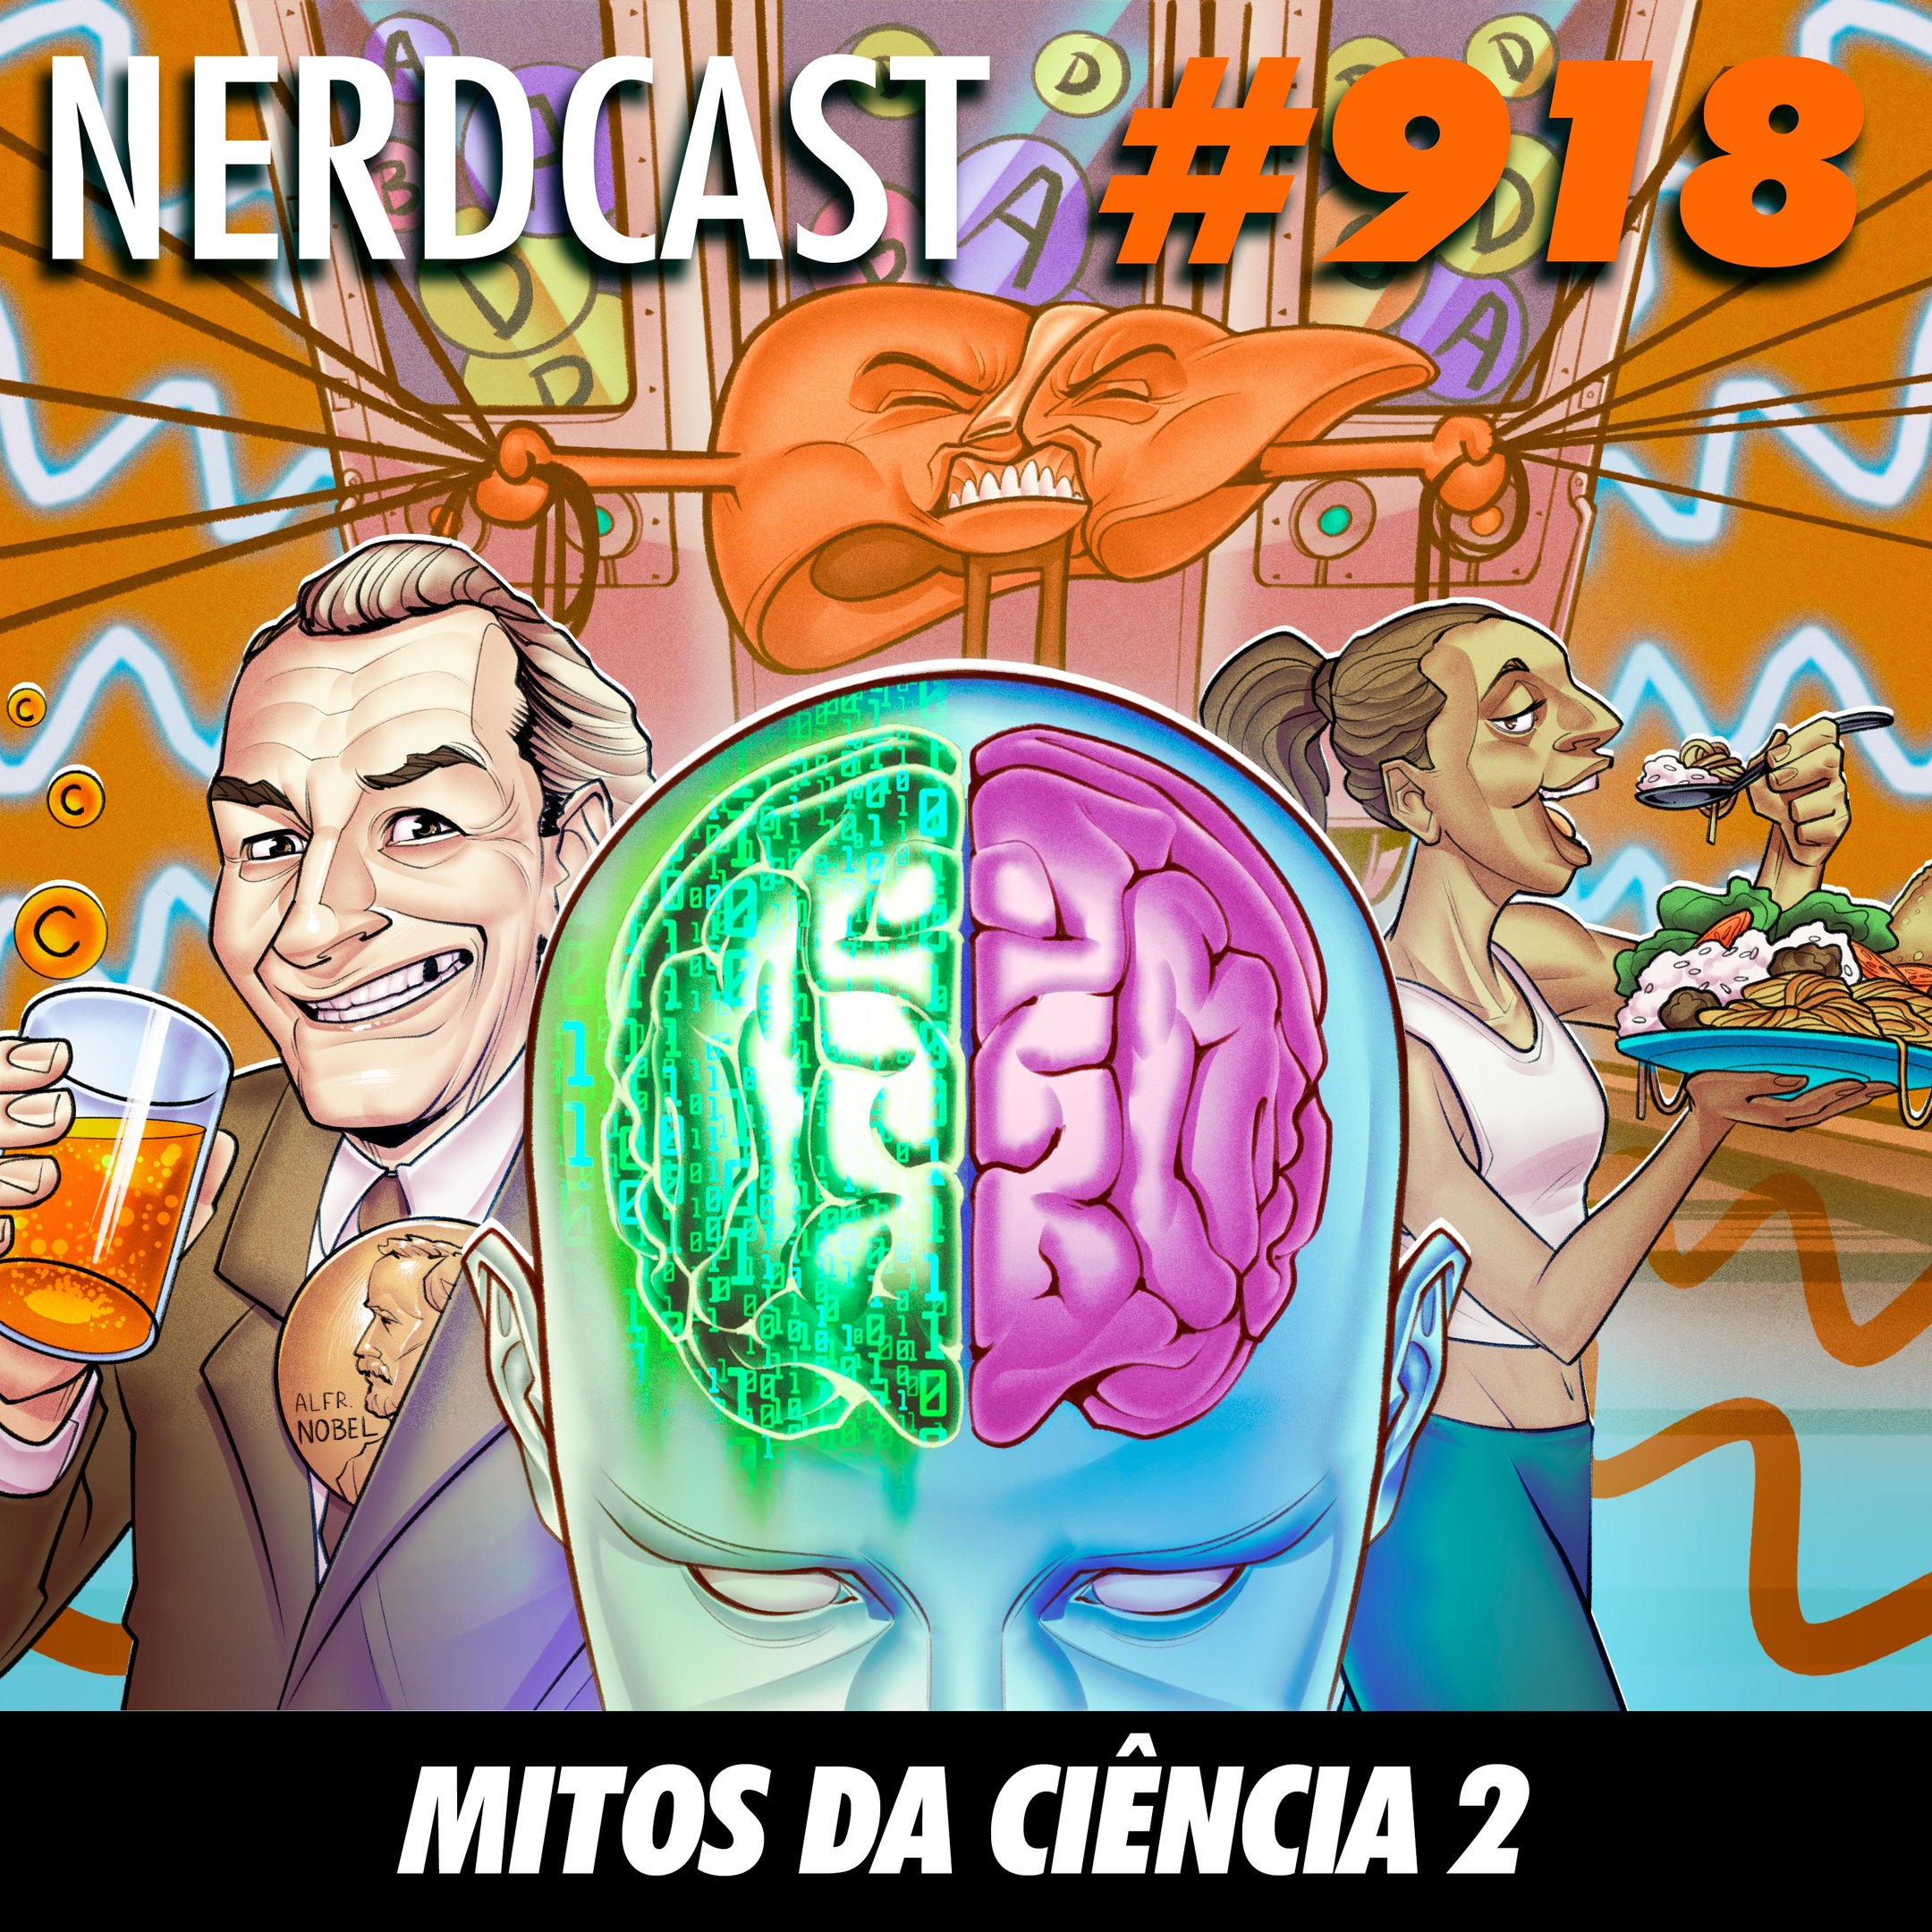 NerdCast 919 - Mitos da Ciência 2